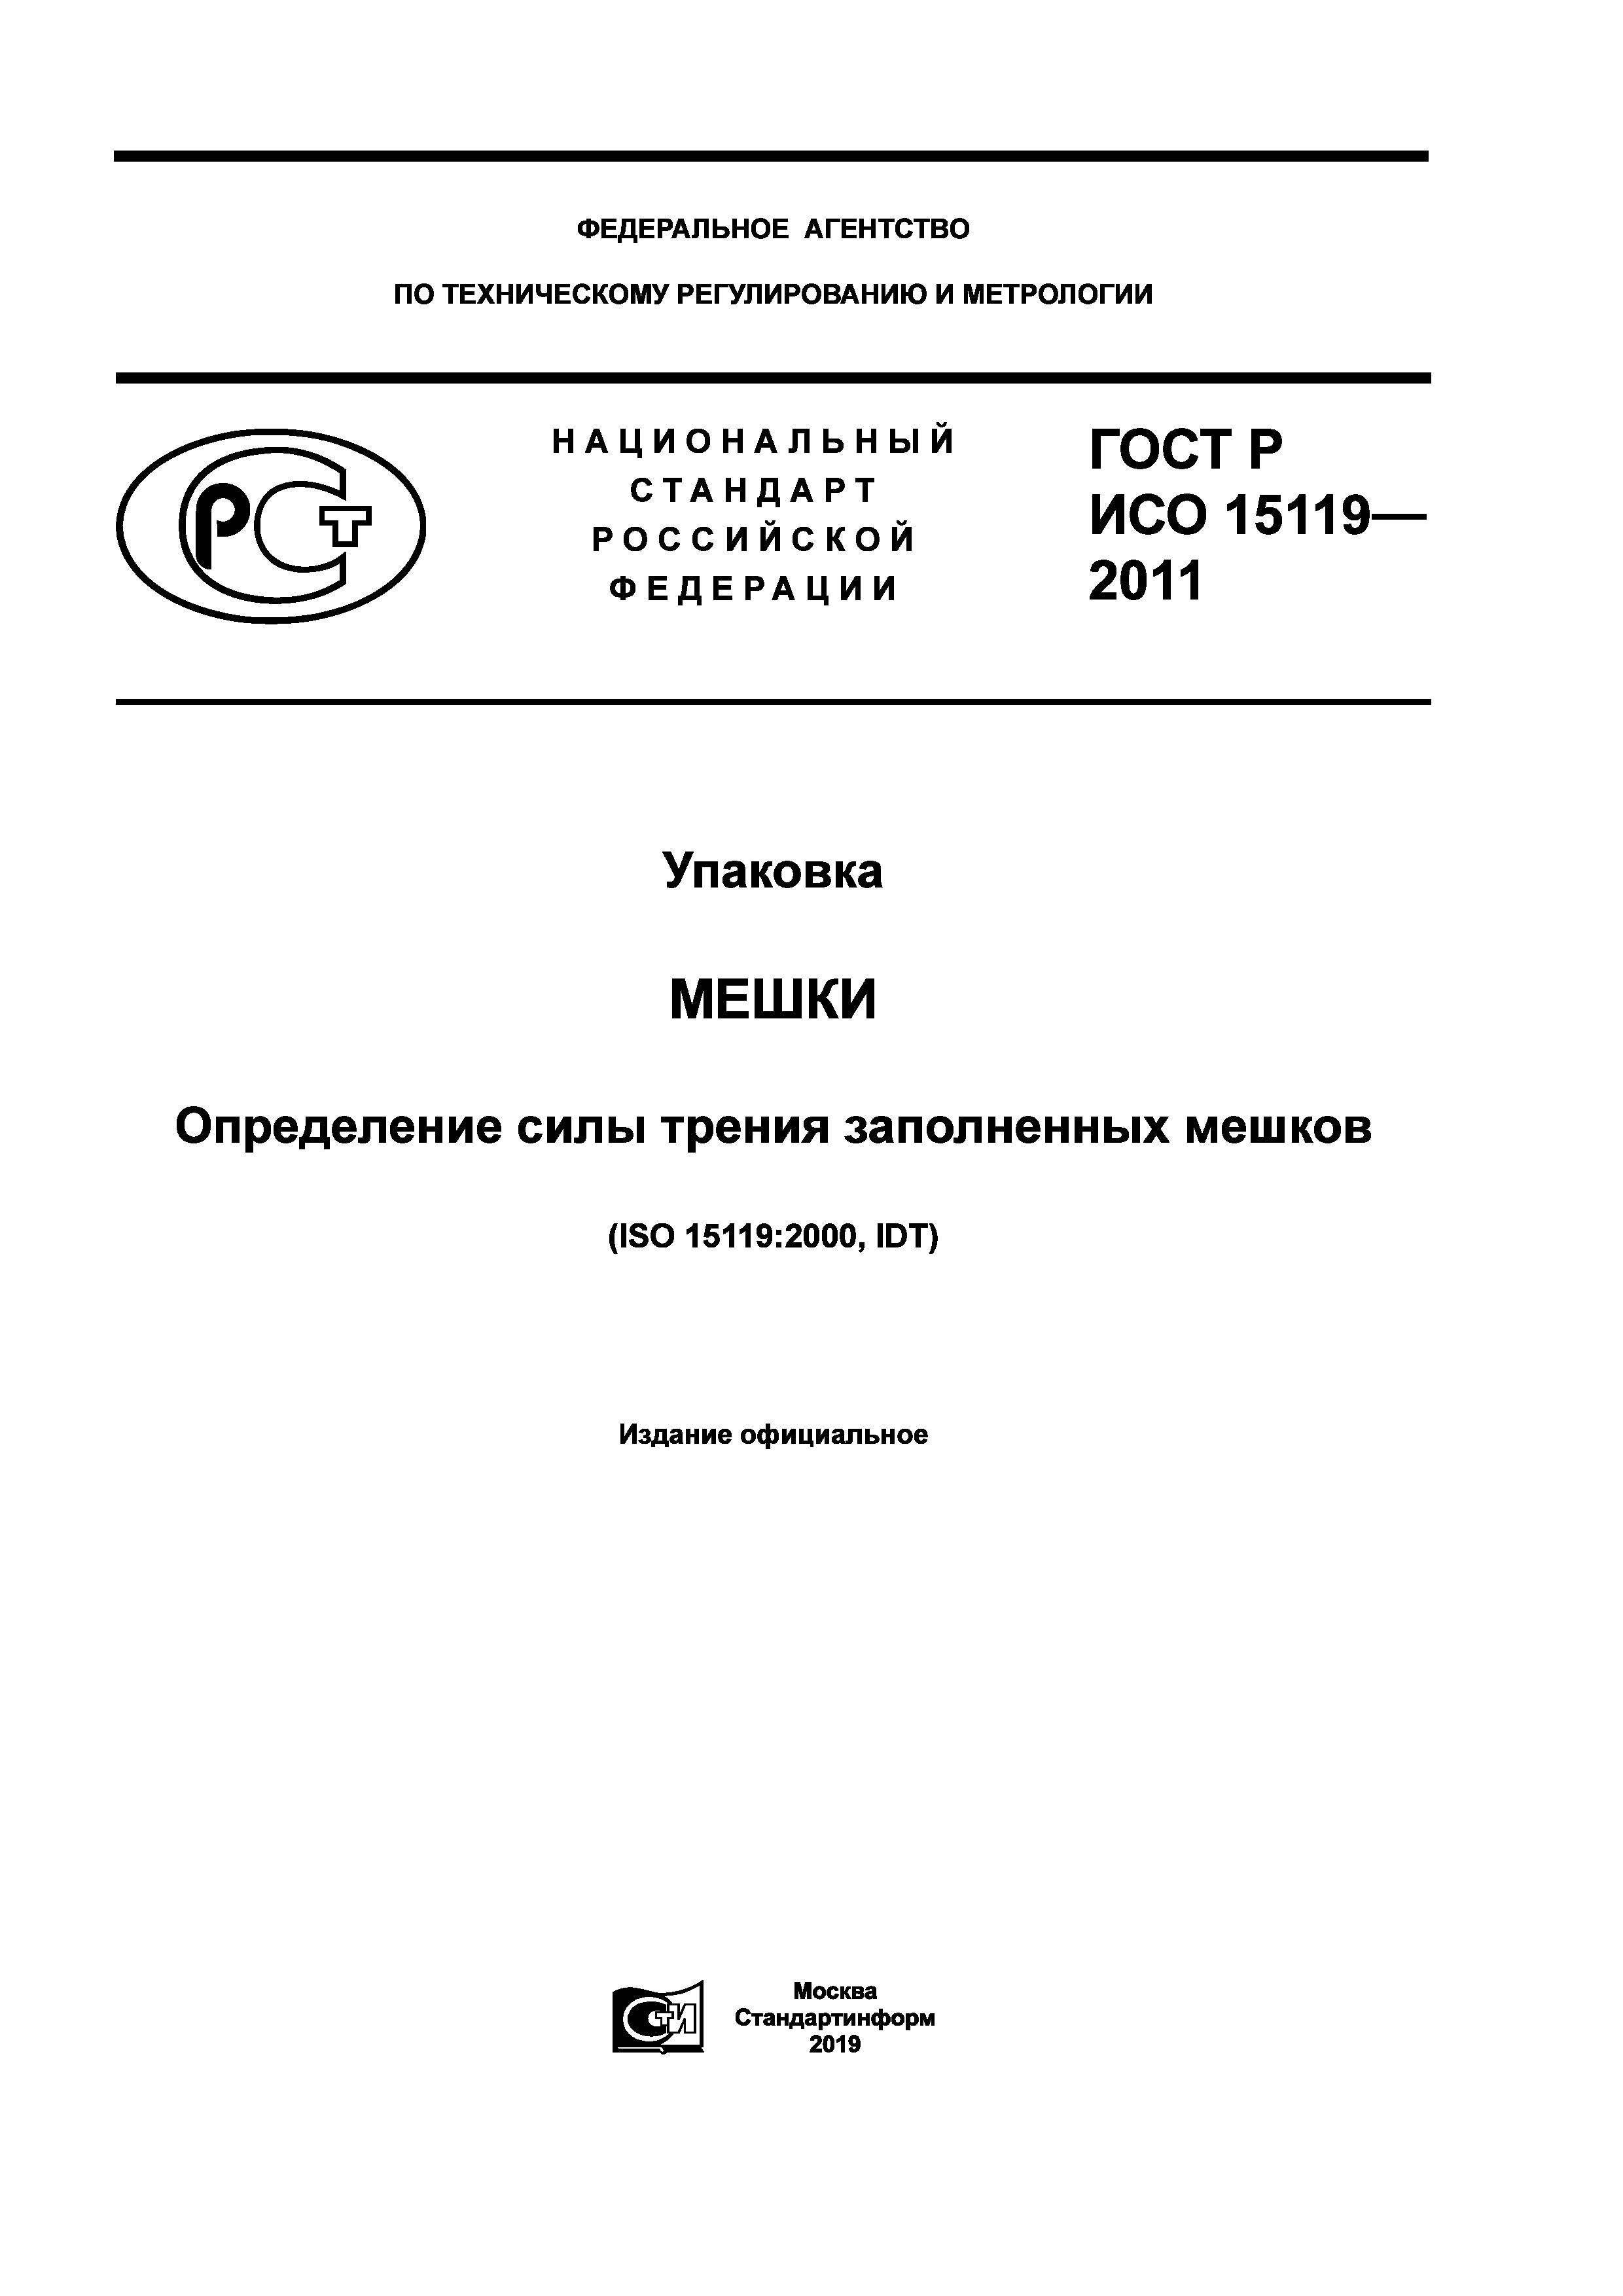 ГОСТ Р ИСО 15119-2011